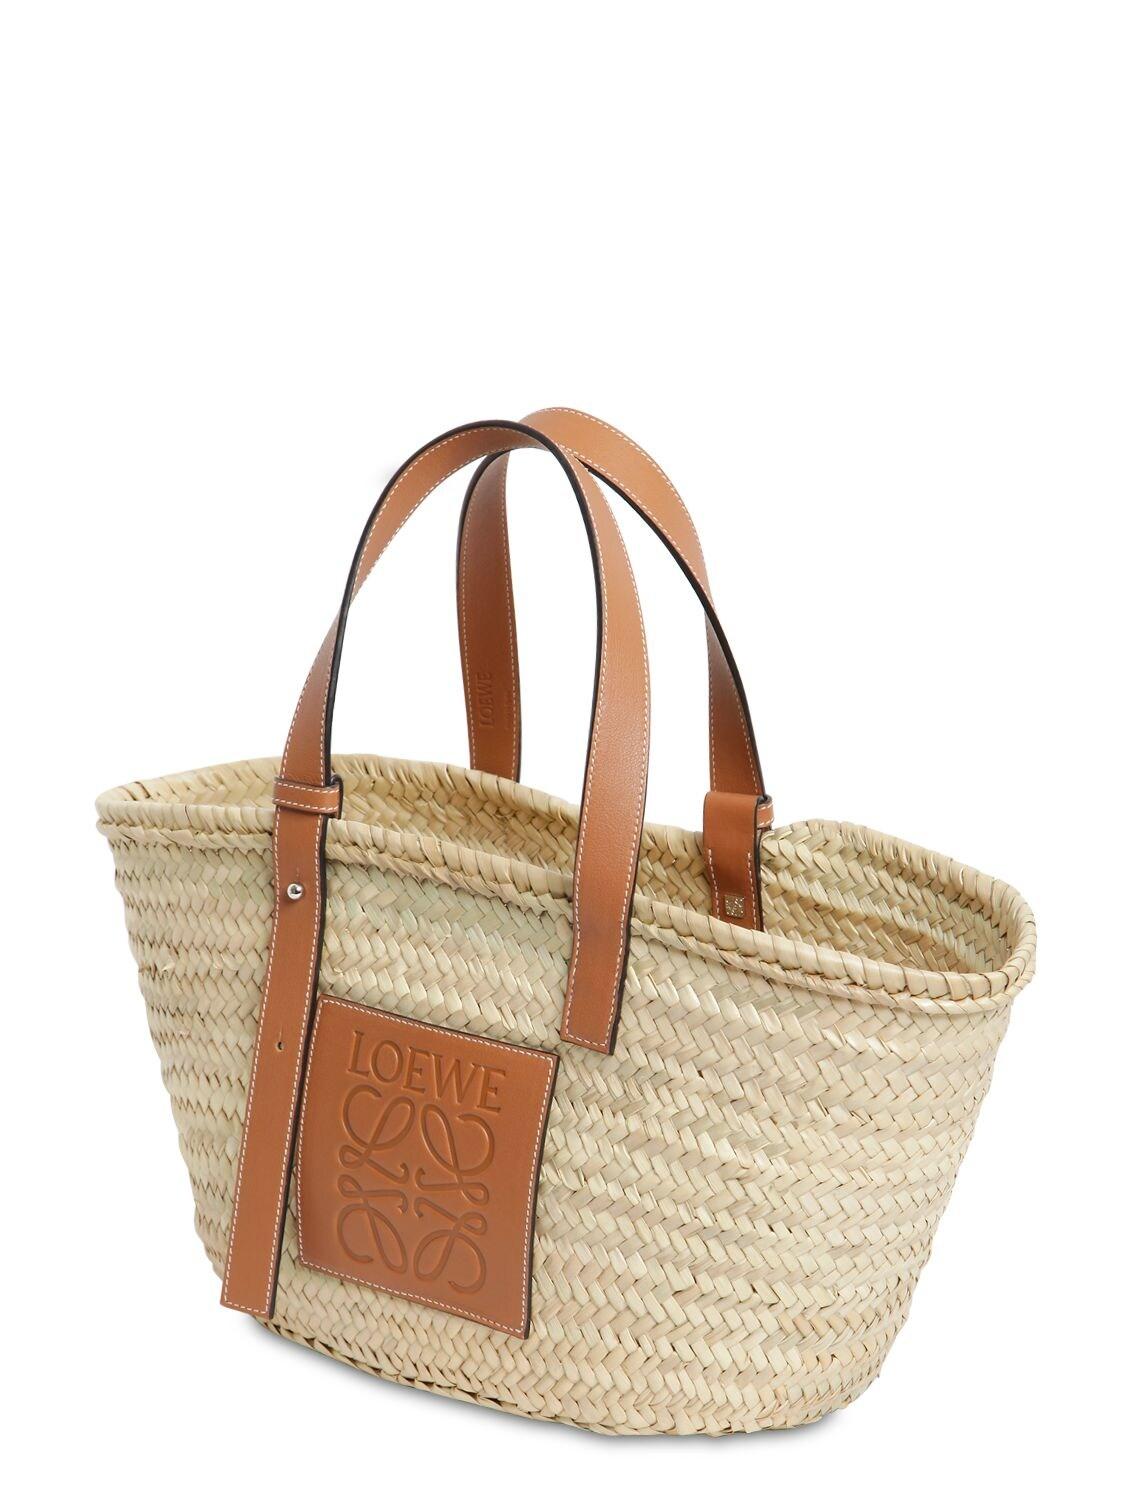 LOEWE Raffia Basket Tote Bag Natural Tan 1307119